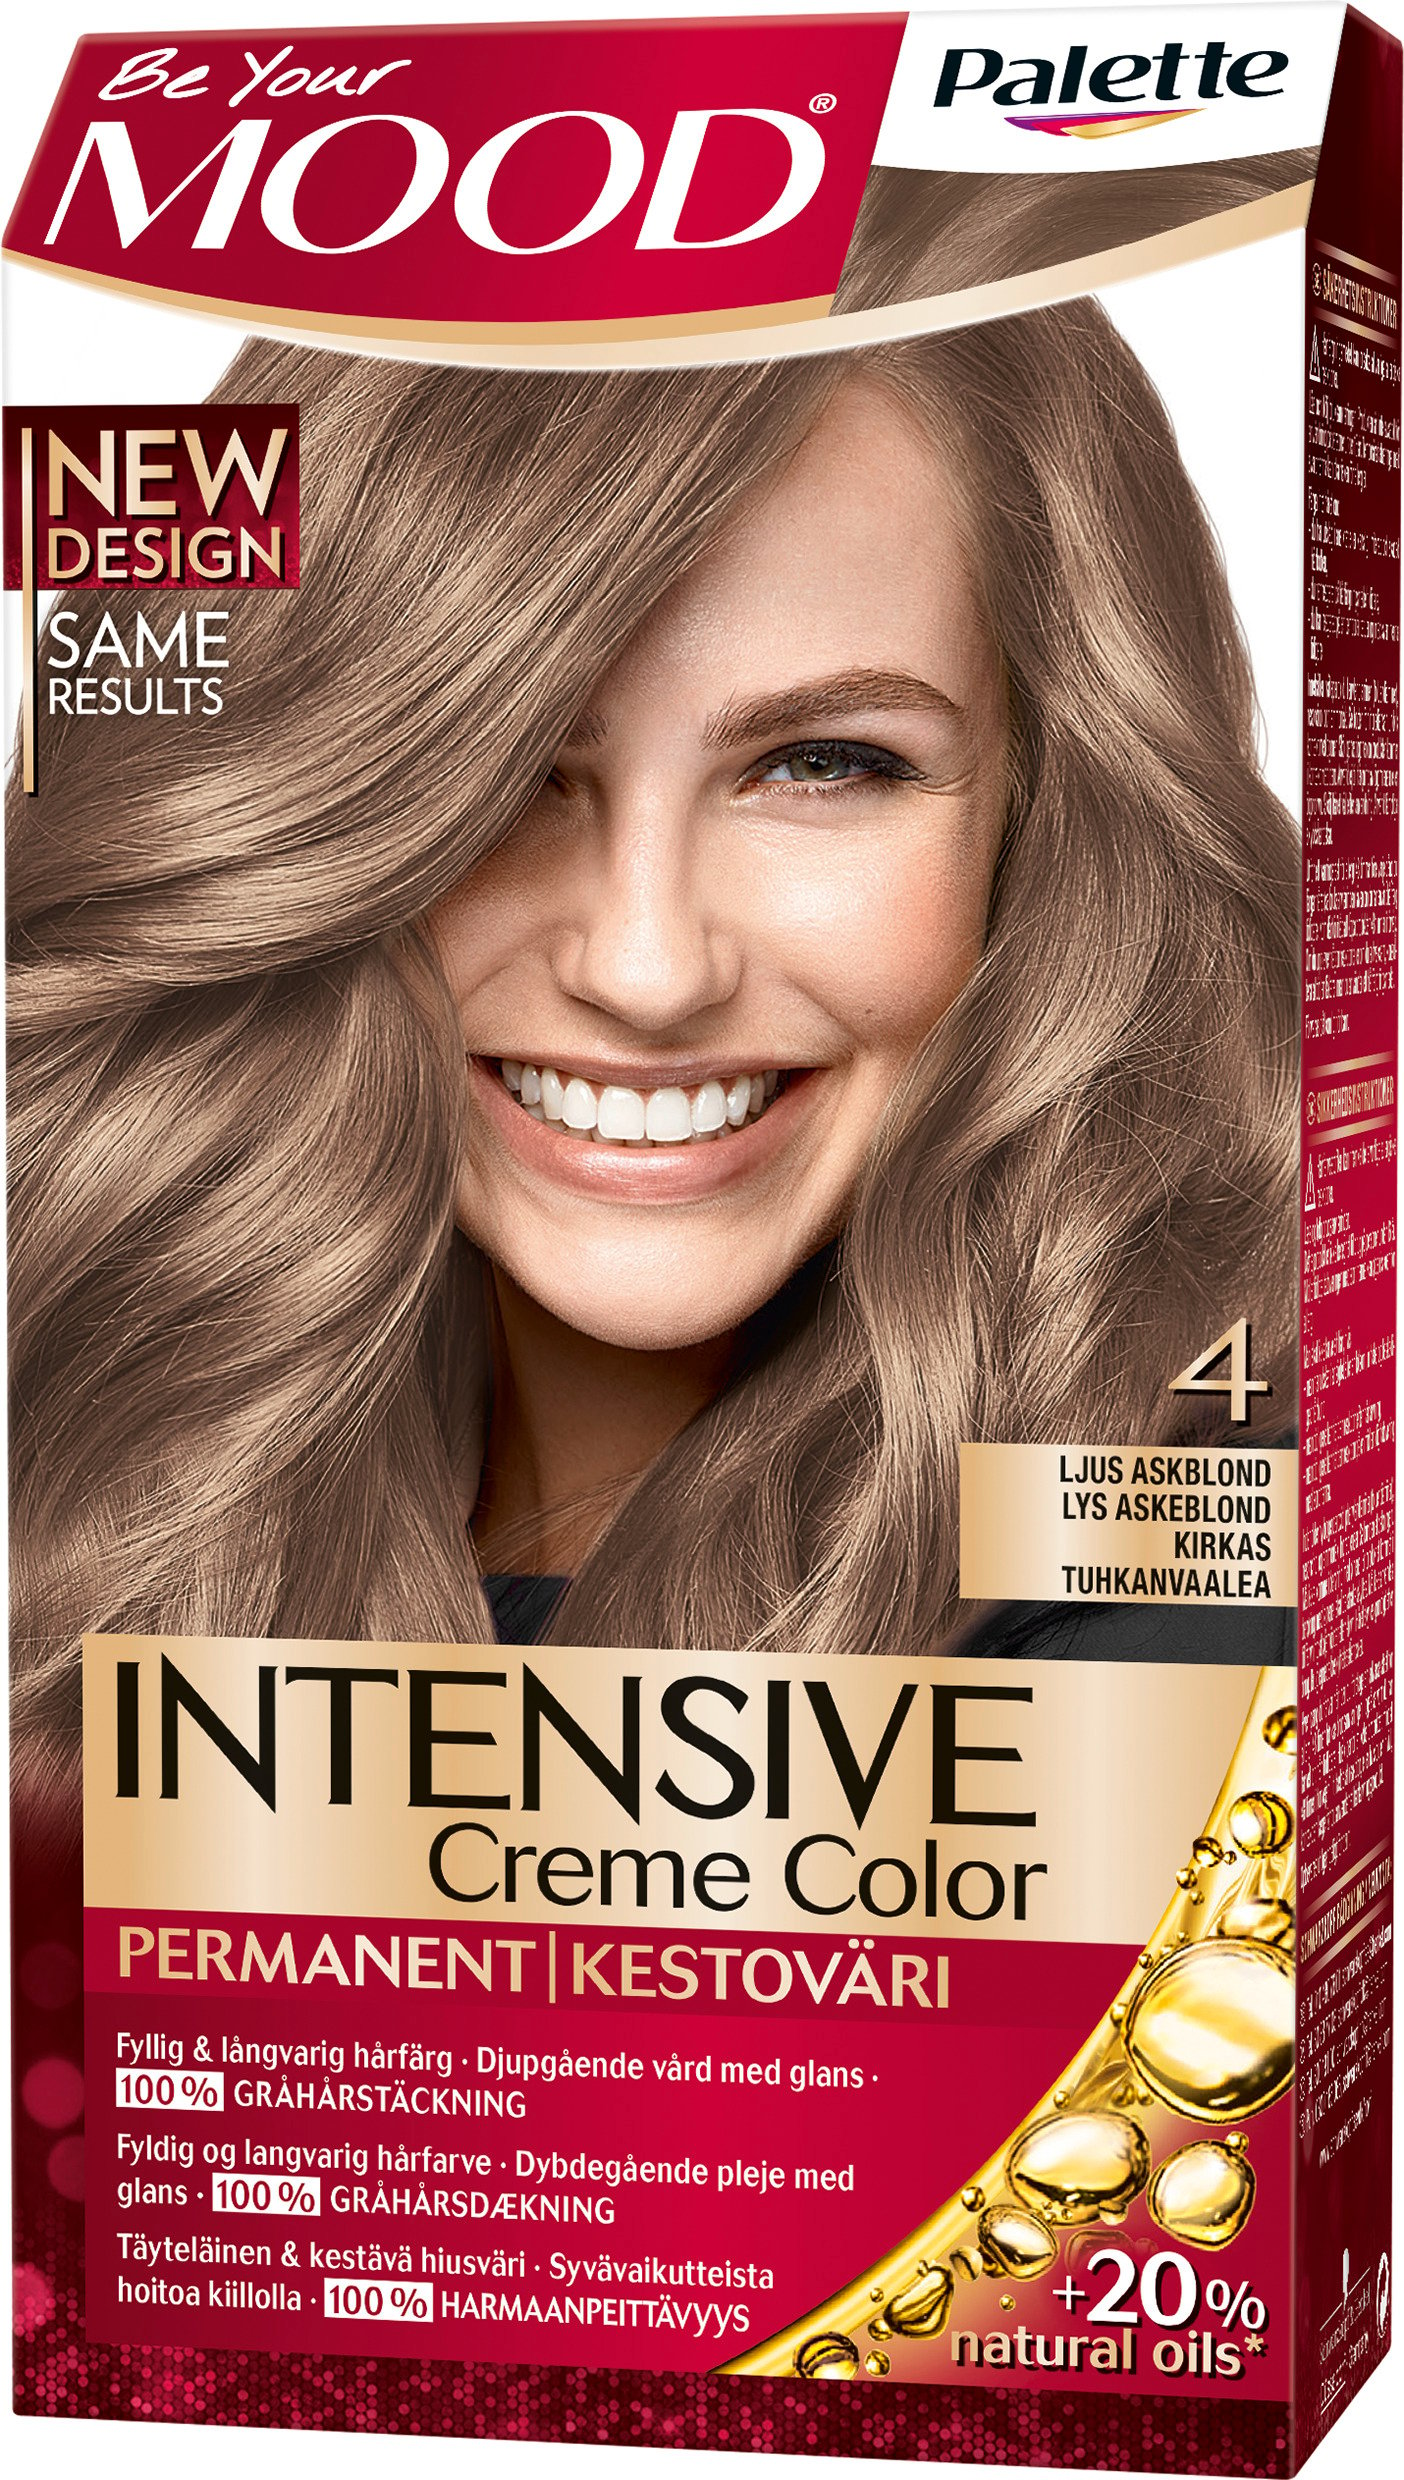 MOOD Palette Intensive Creme Color 4 Ljus Askblond